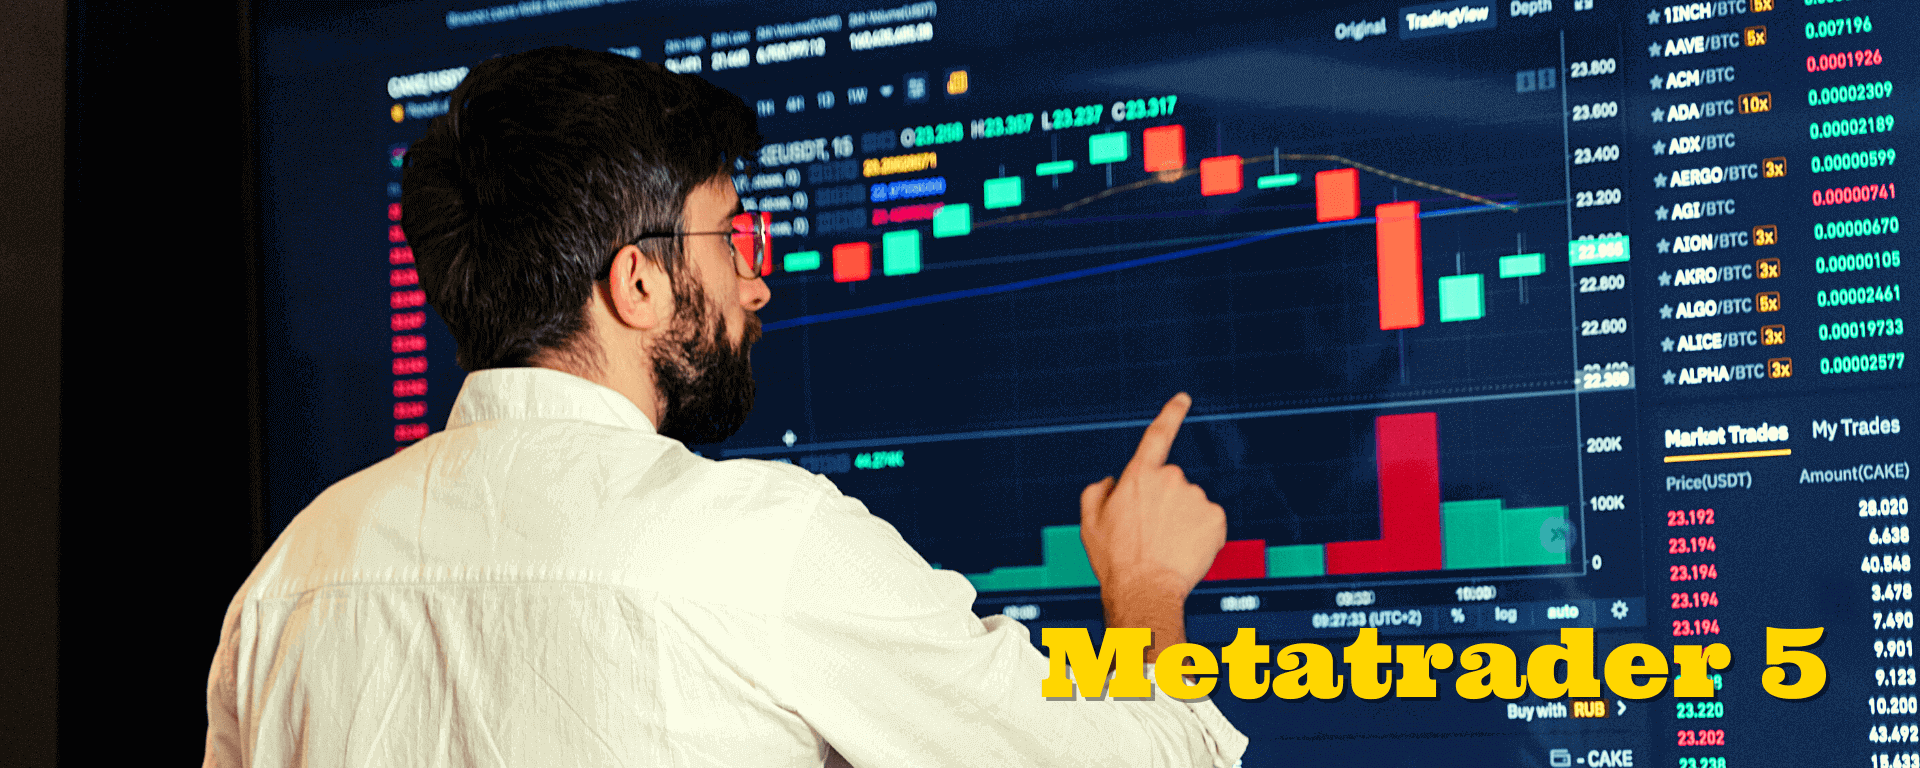 Como fazer o download do Meta Trader 5 e entrar no Metatrader 5 passo a passo